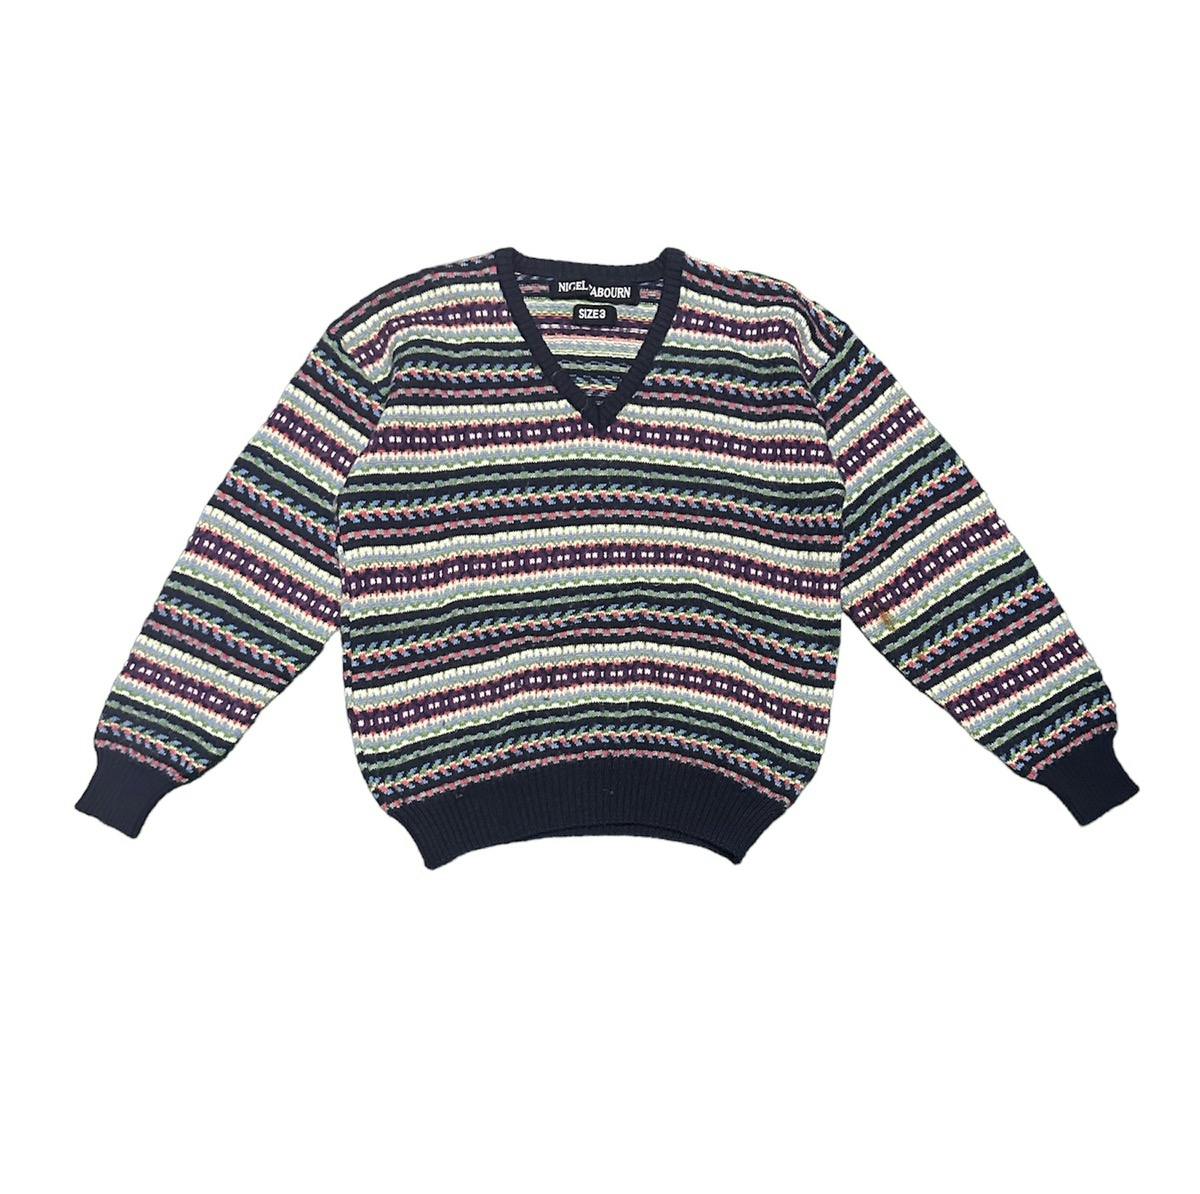 Nigel cabourn wool knitwear - 1